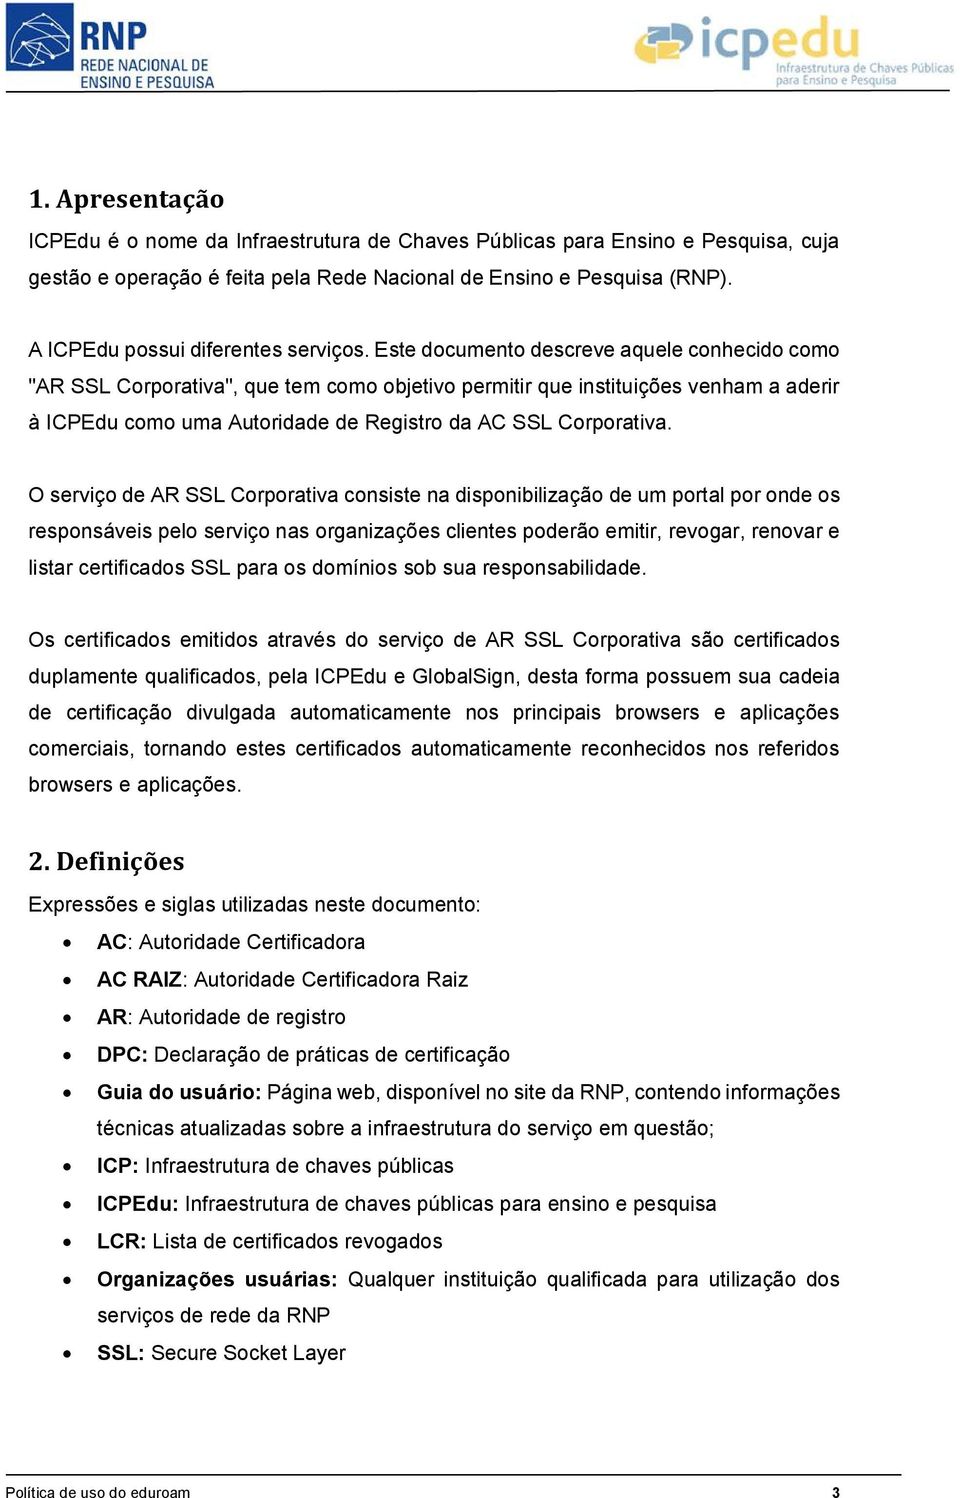 Este documento descreve aquele conhecido como "AR SSL Corporativa", que tem como objetivo permitir que instituições venham a aderir à ICPEdu como uma Autoridade de Registro da AC SSL Corporativa.